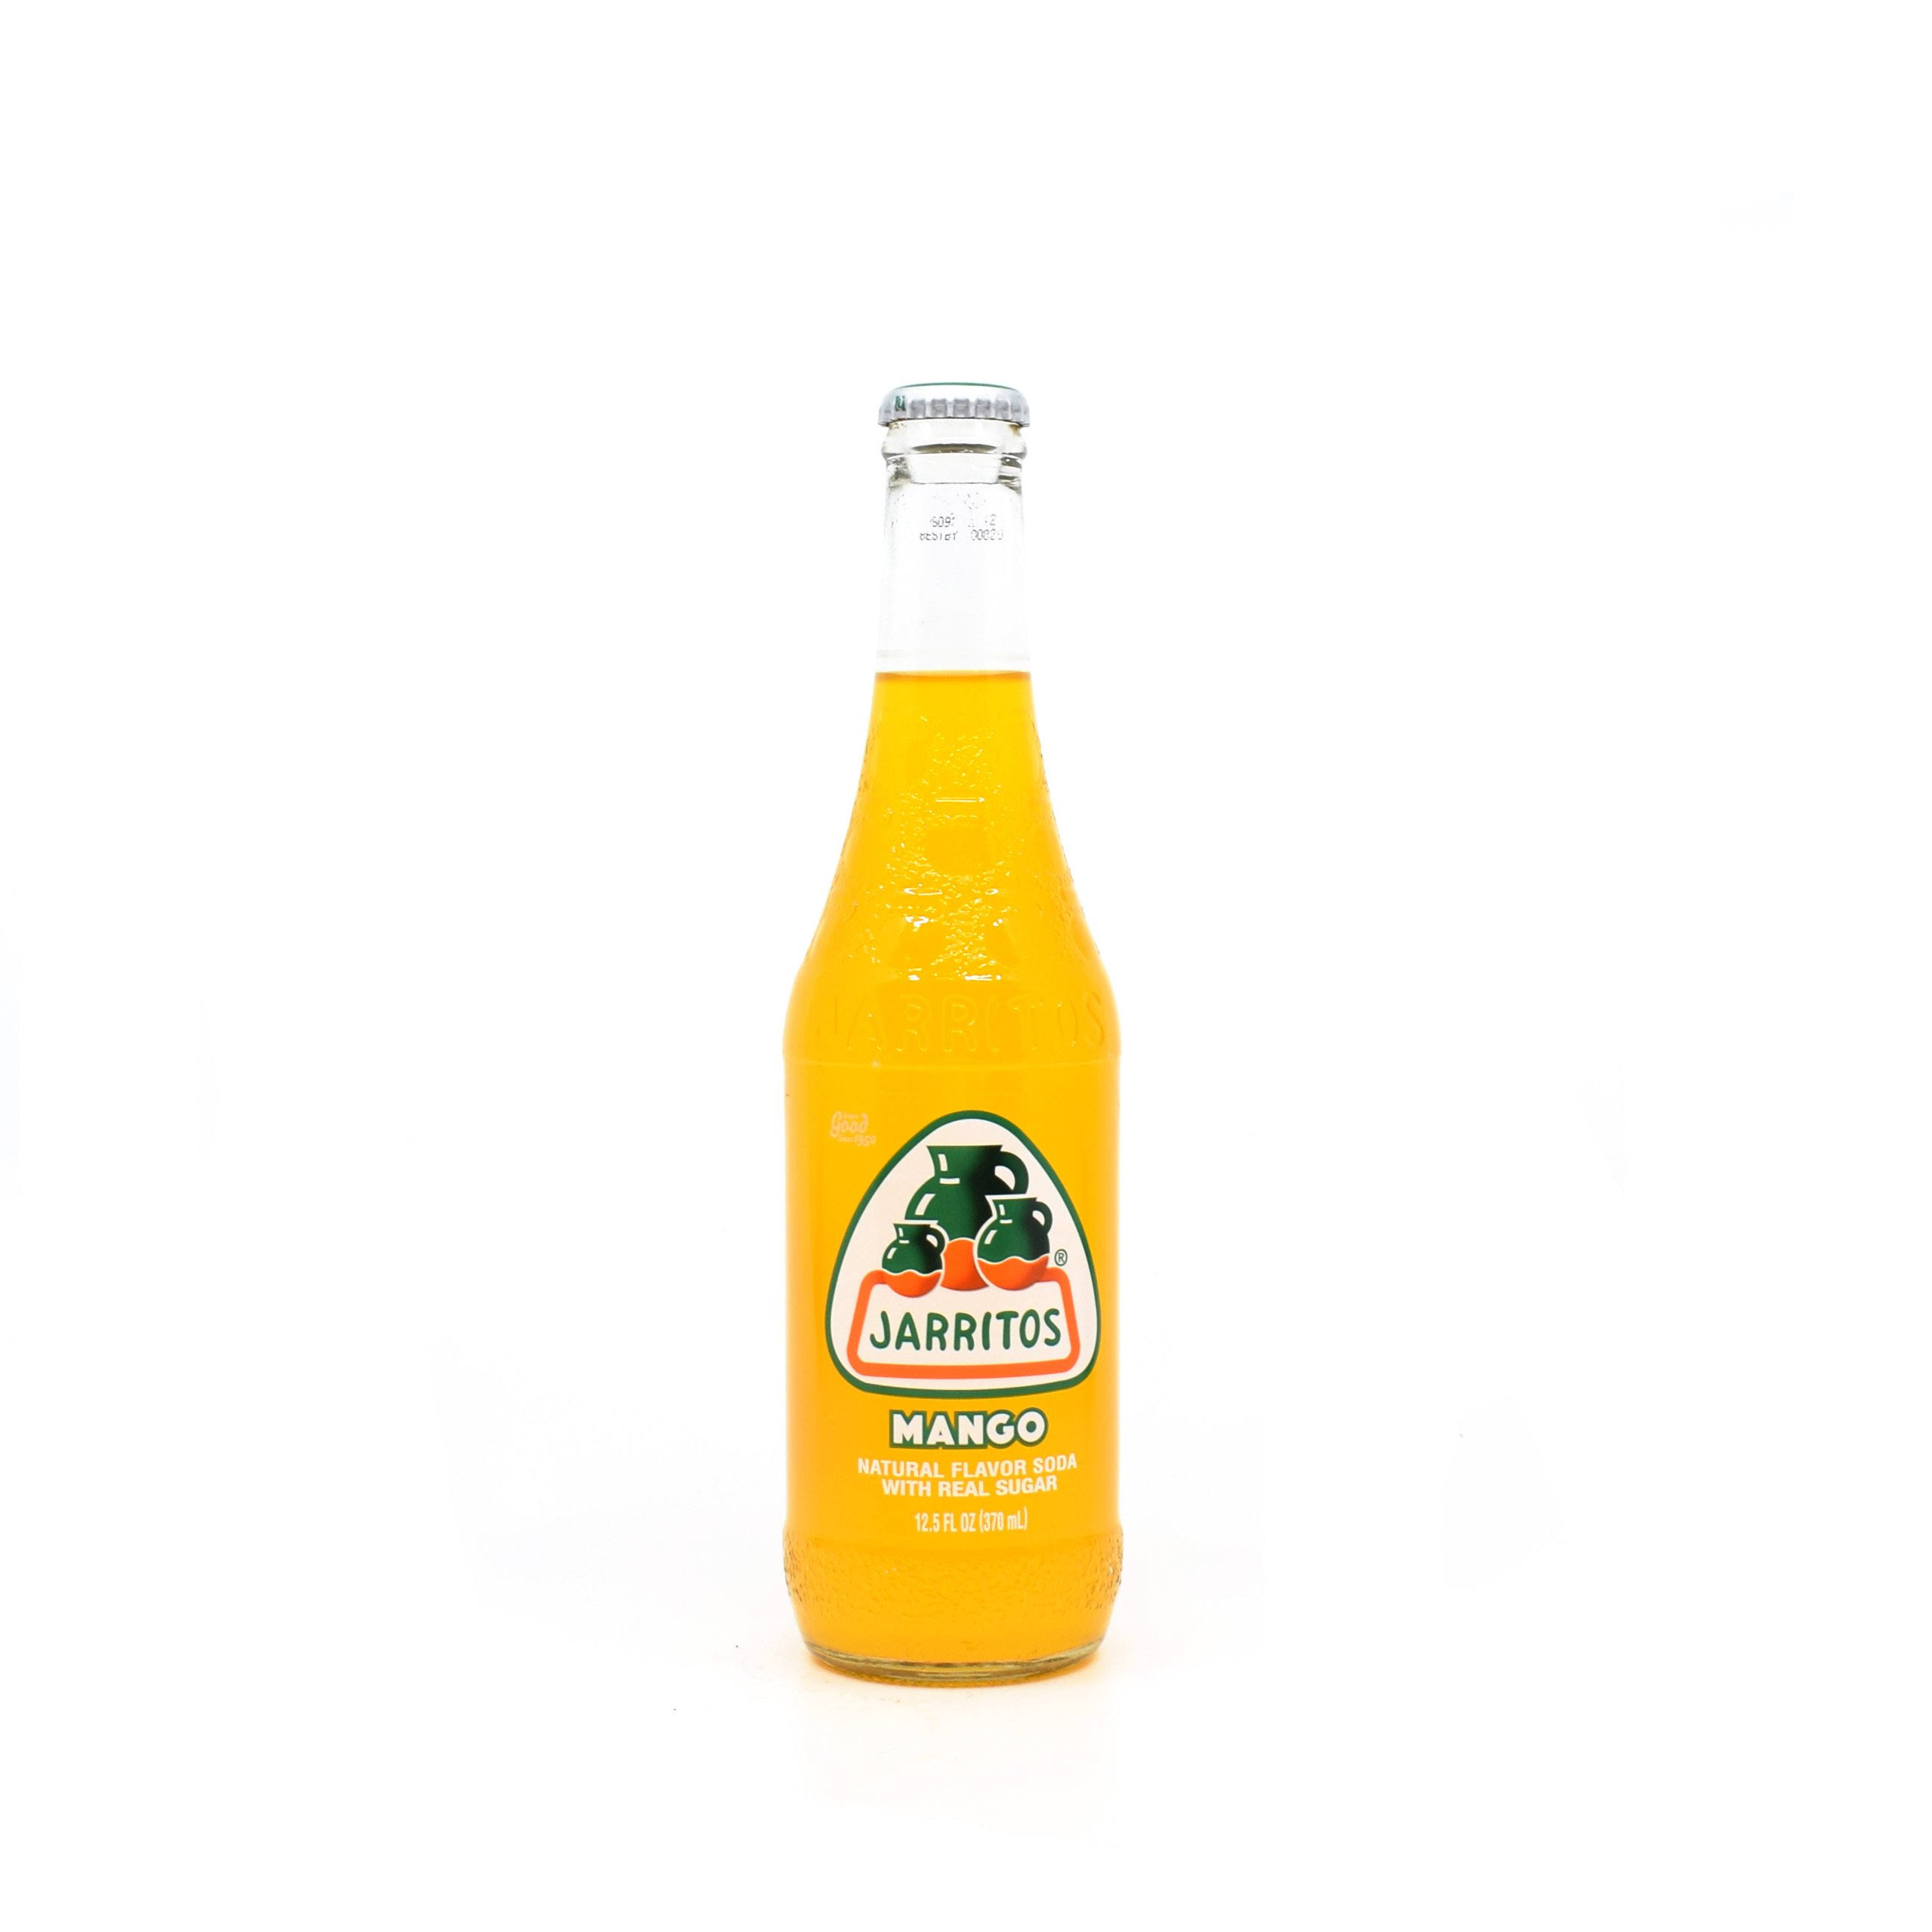 Jarritos Mango Soda Pop